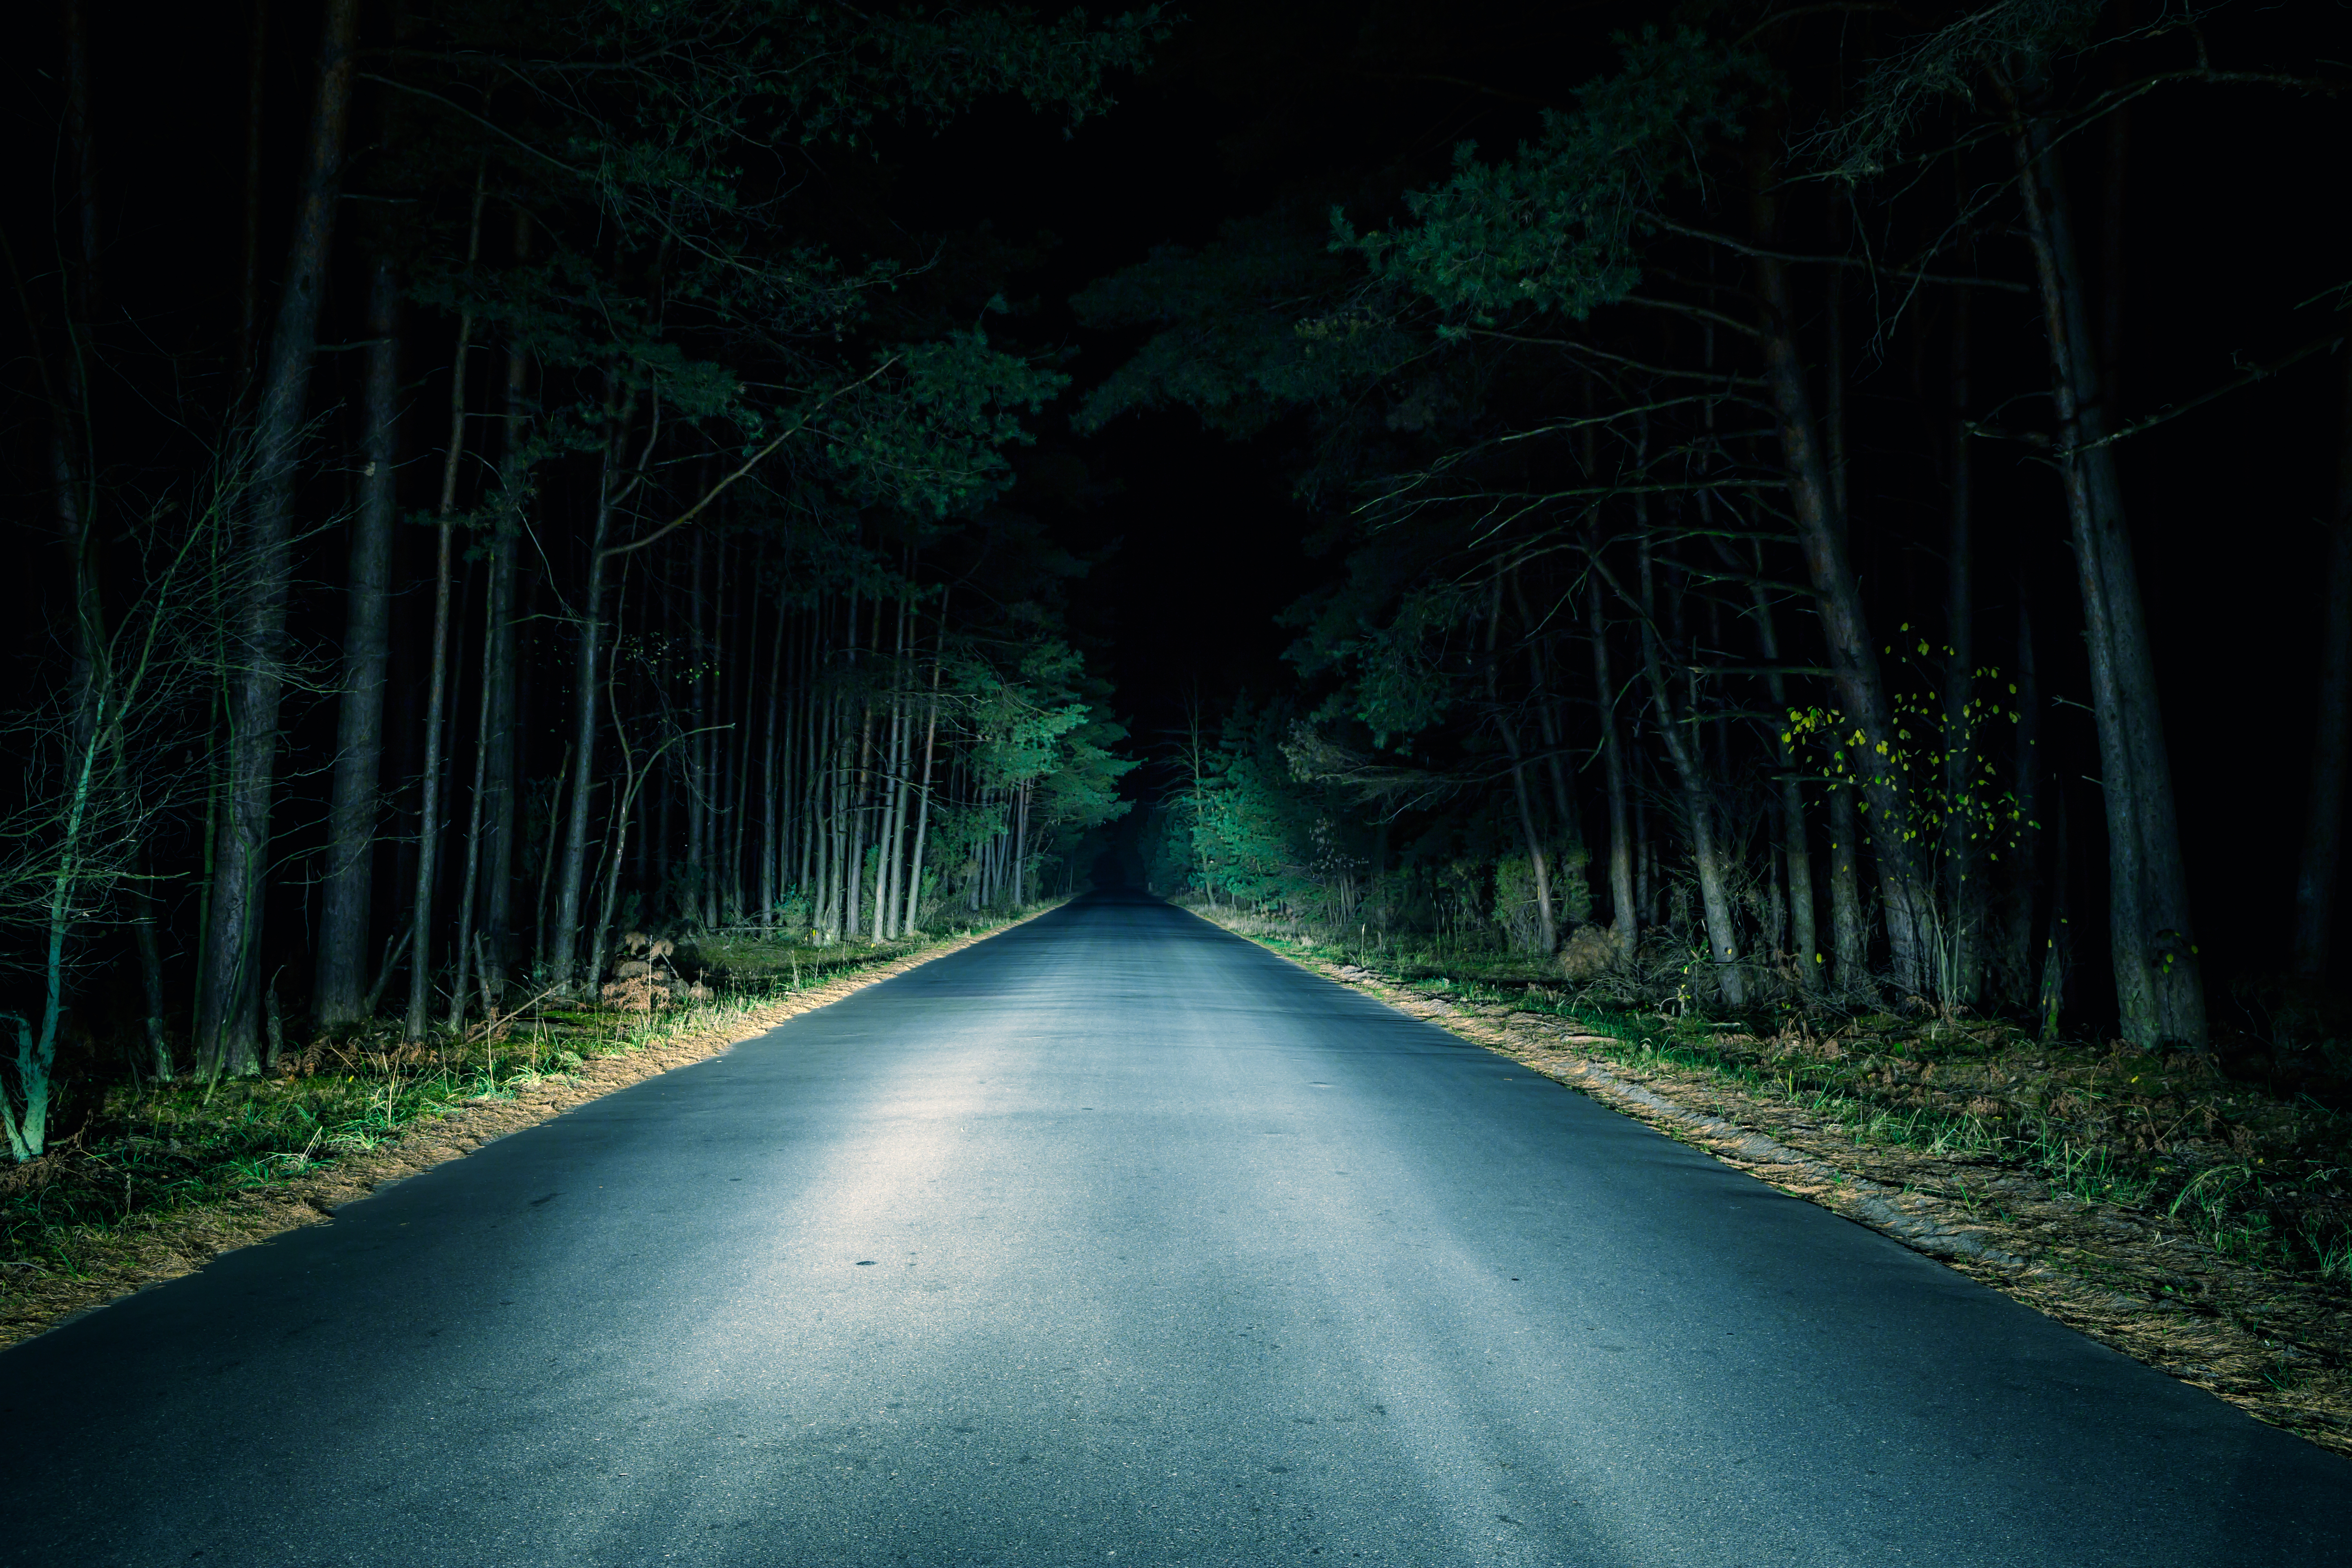 Night Road on dark forest | Source: Shutterstock